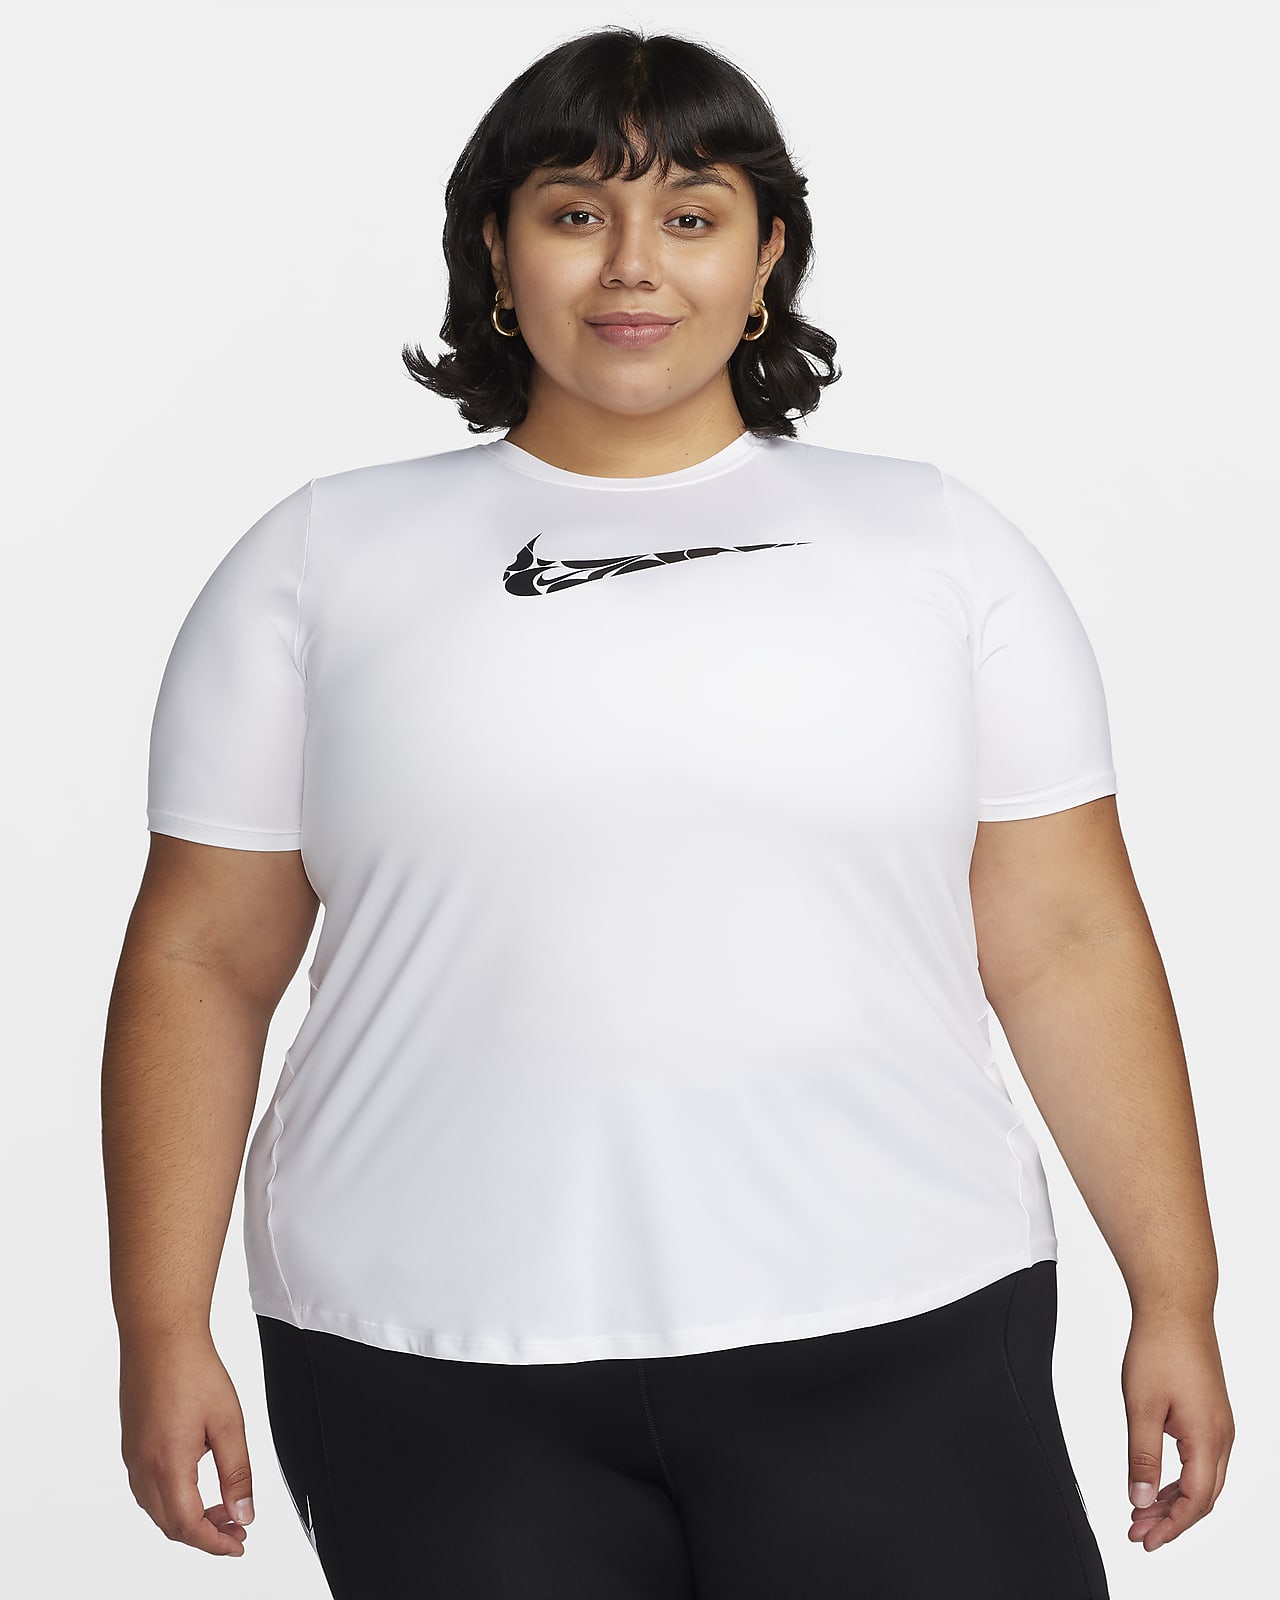 Nike One Swoosh Dri-FIT rövid ujjú női futófelső (plus size méret)